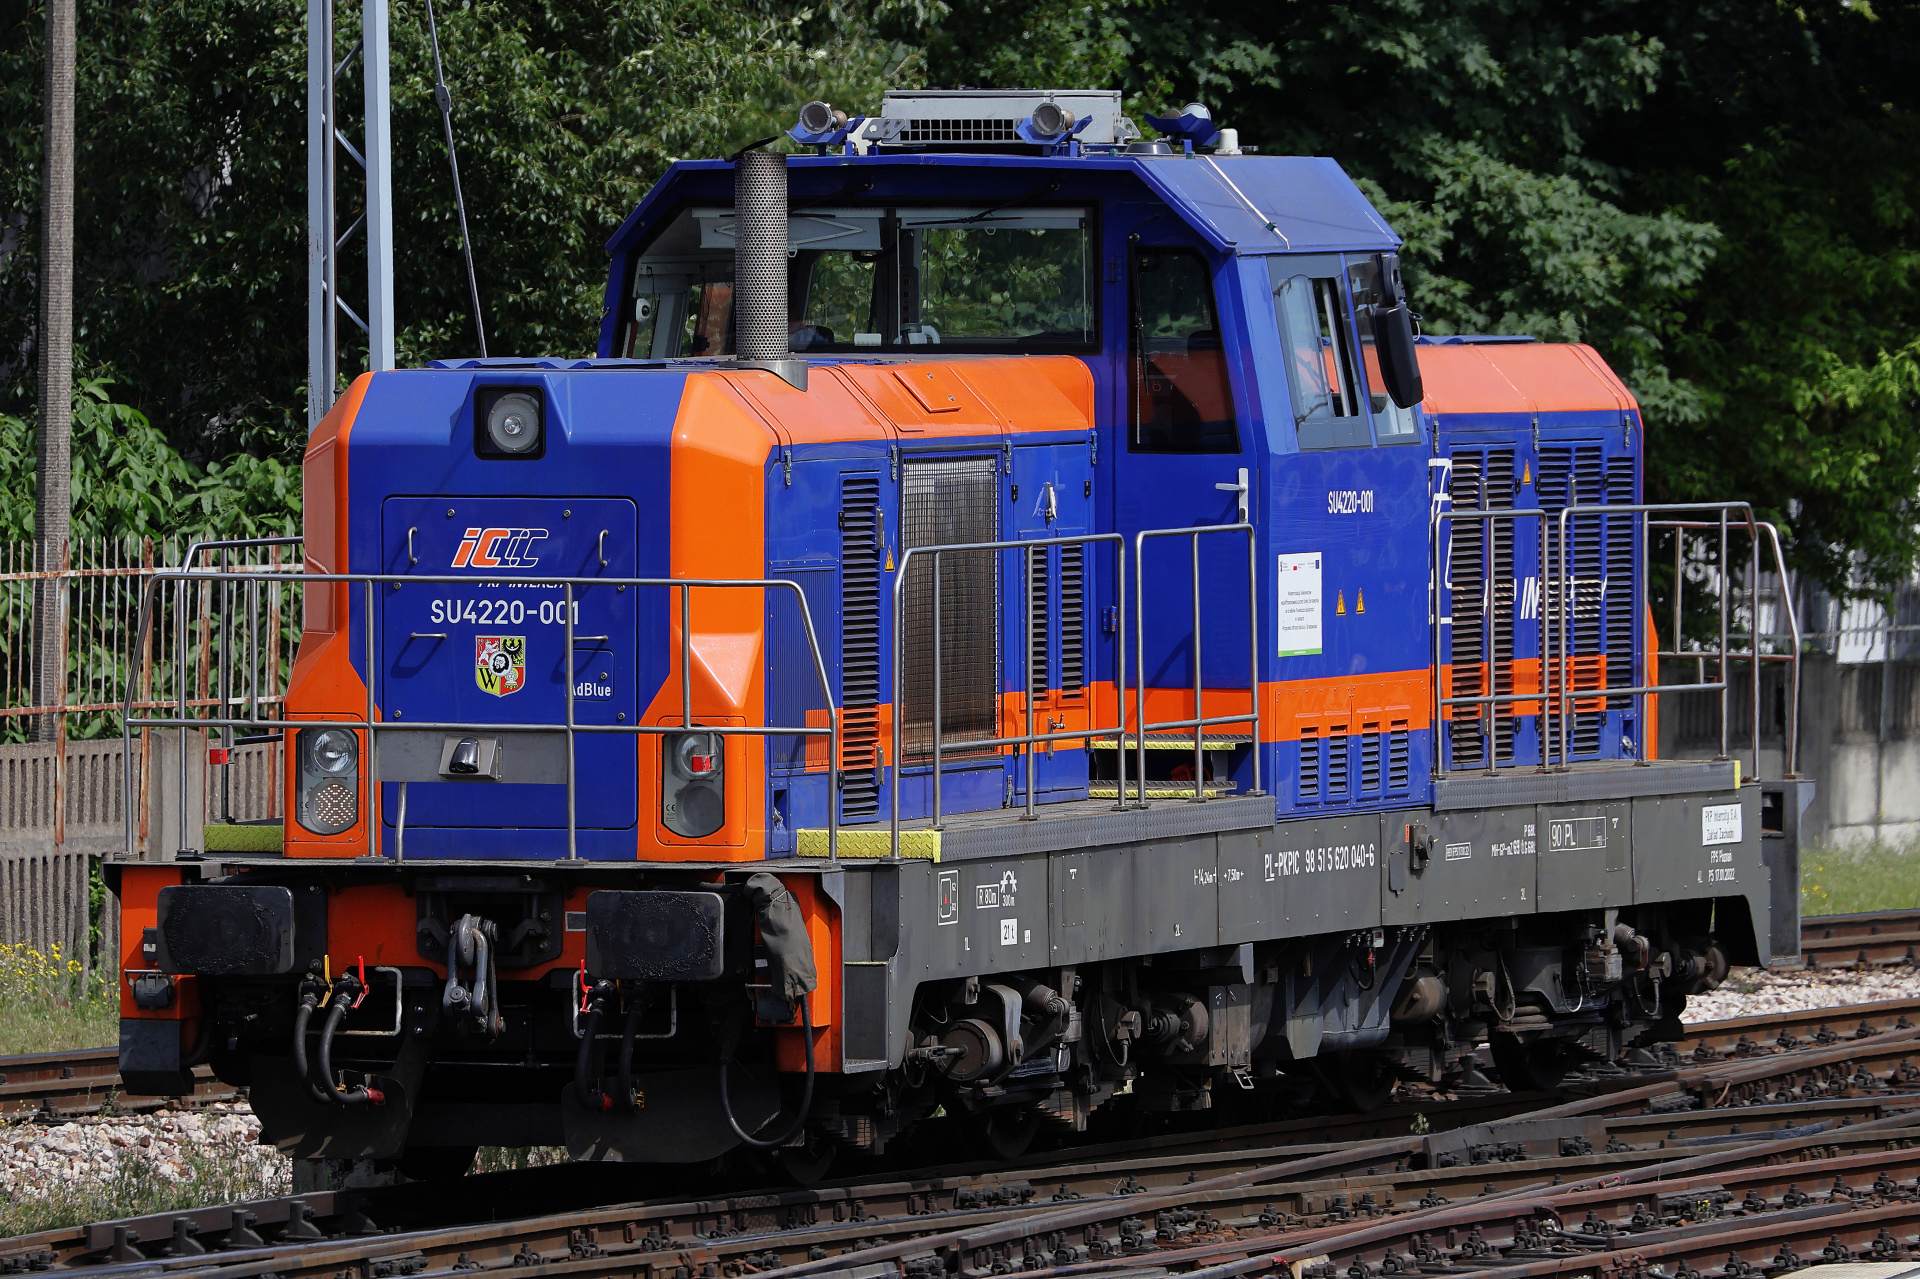 FPS Cegielski SU4220-001 (Vehicles » Trains and Locomotives)